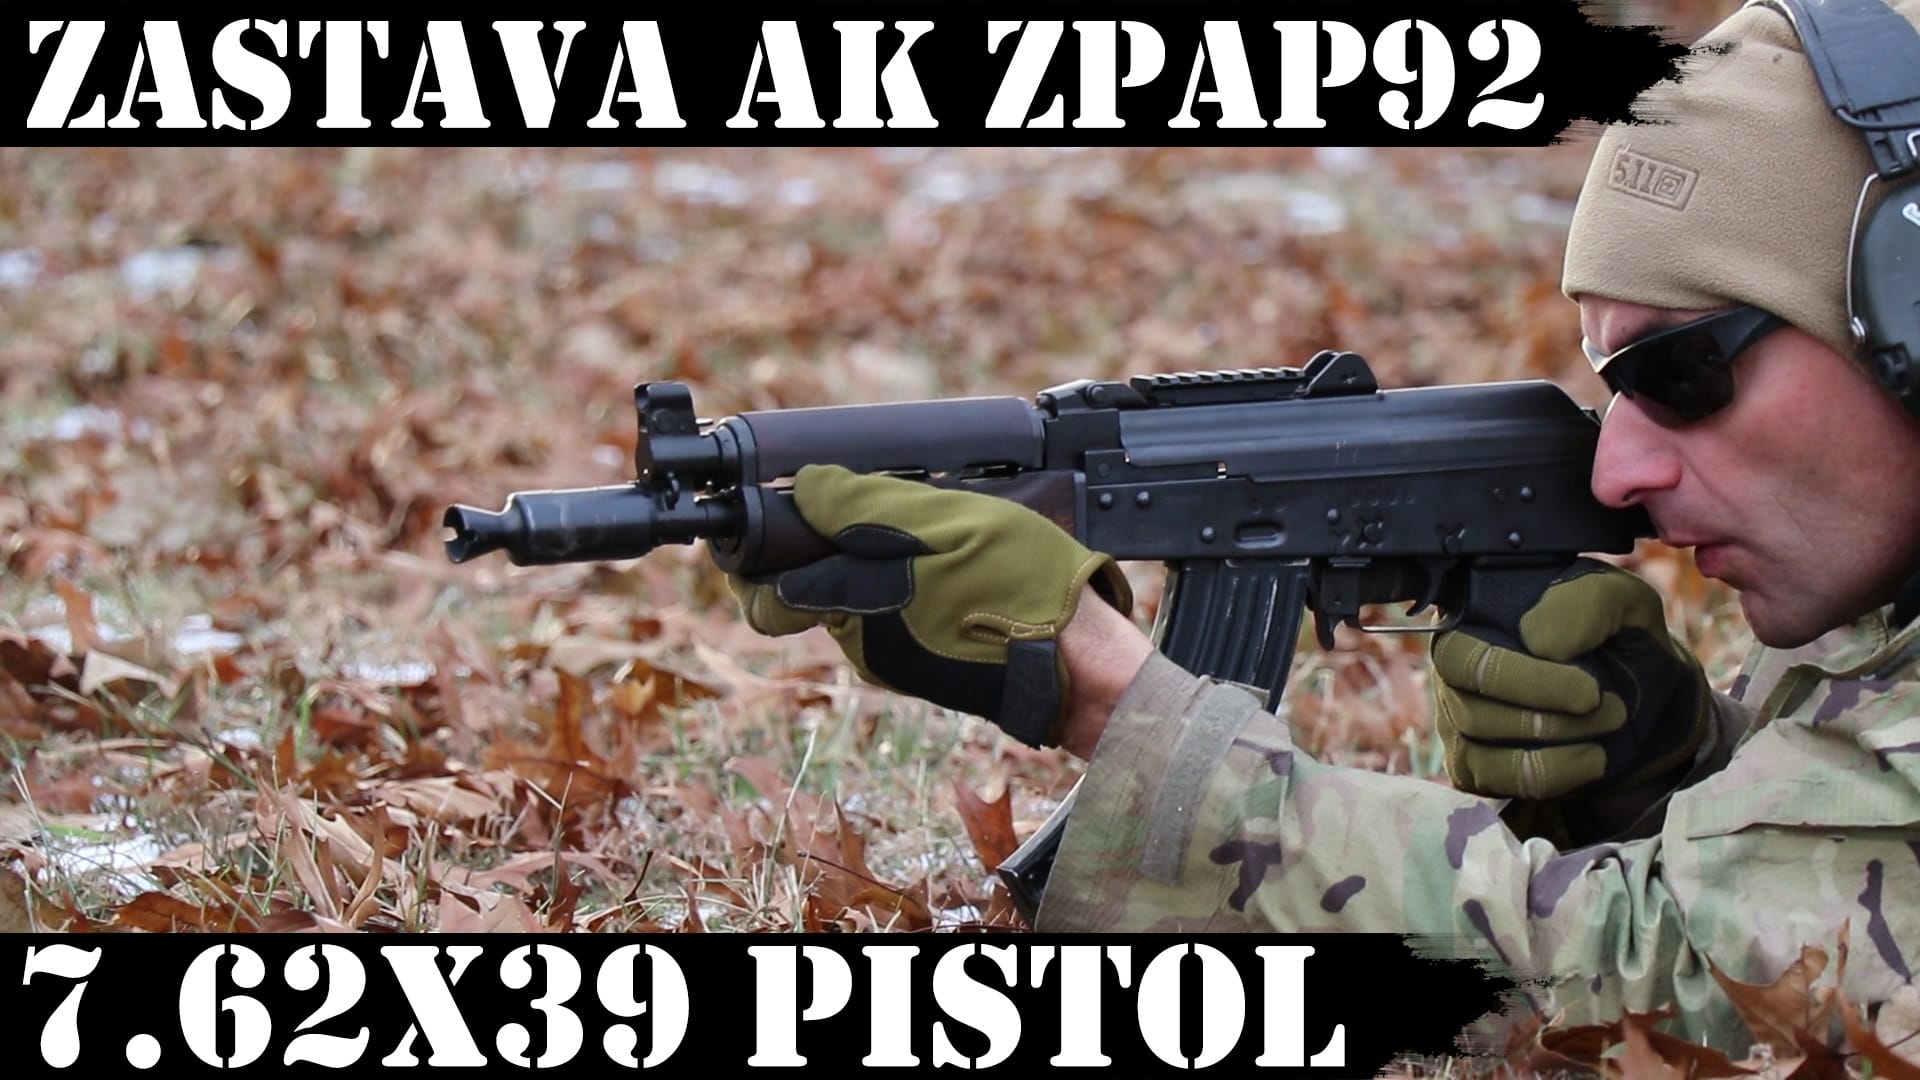 ZPAP92, AK-47, 7.62x39